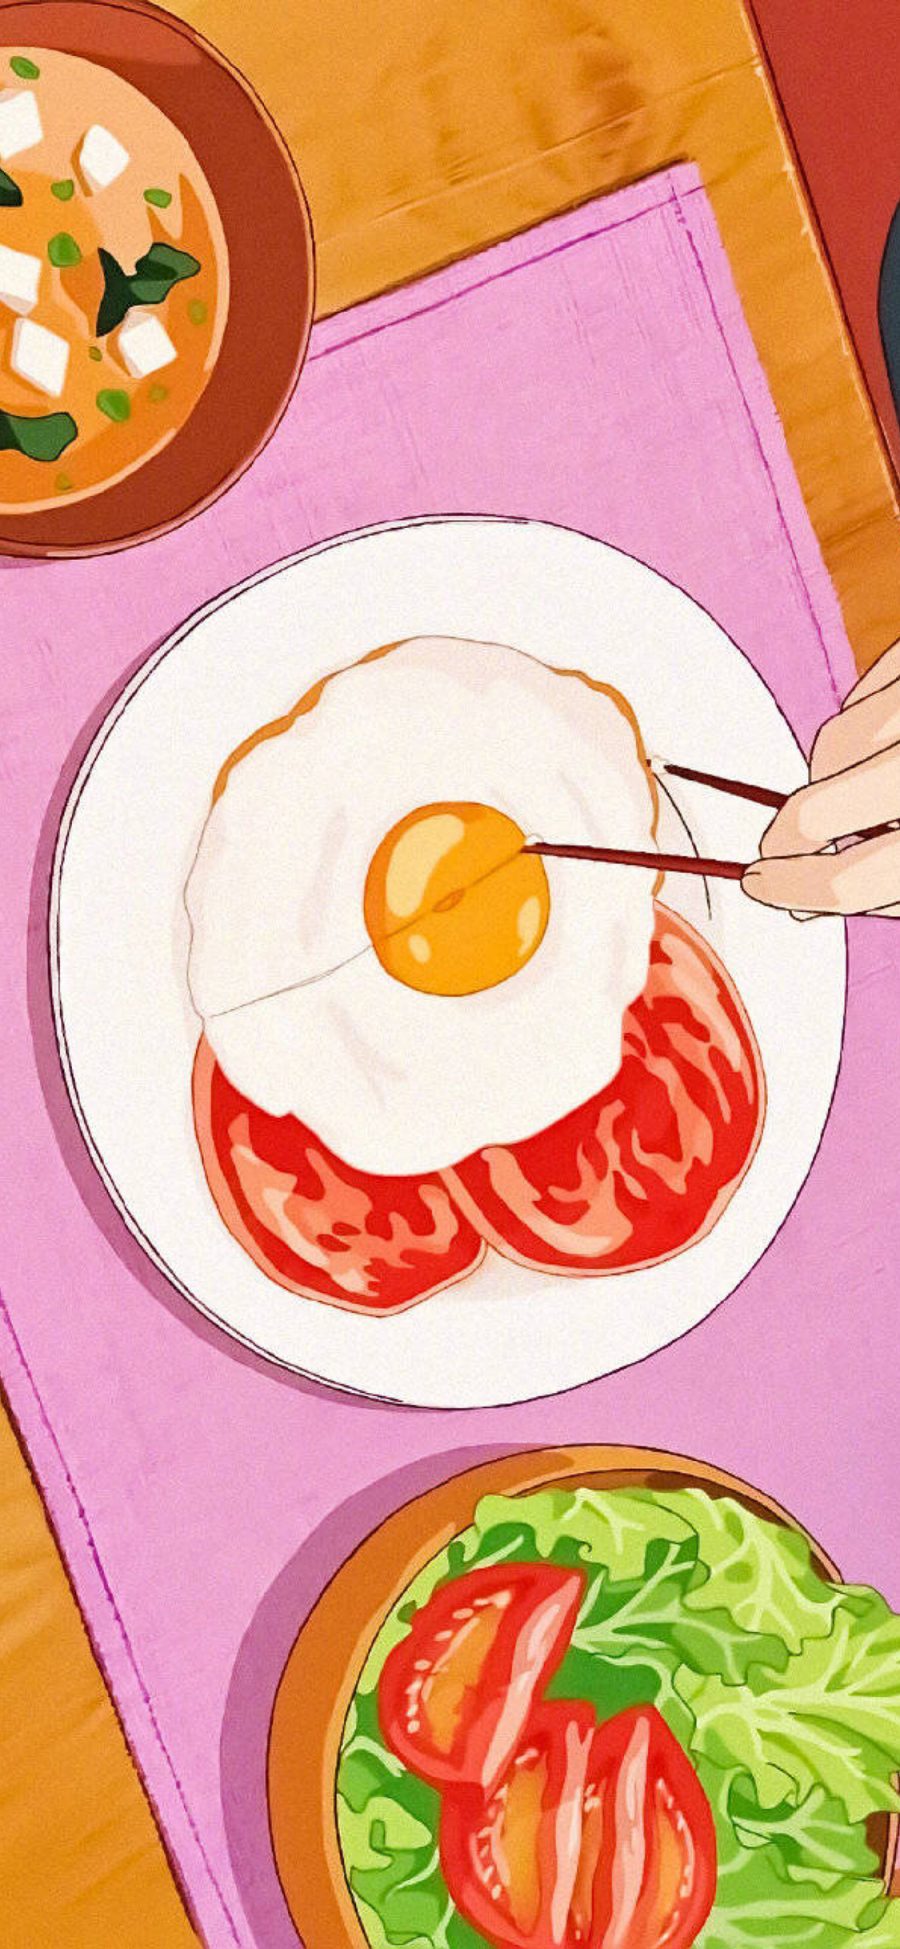 [2436×1125]日系 插图 煎蛋 美食 苹果手机动漫壁纸图片